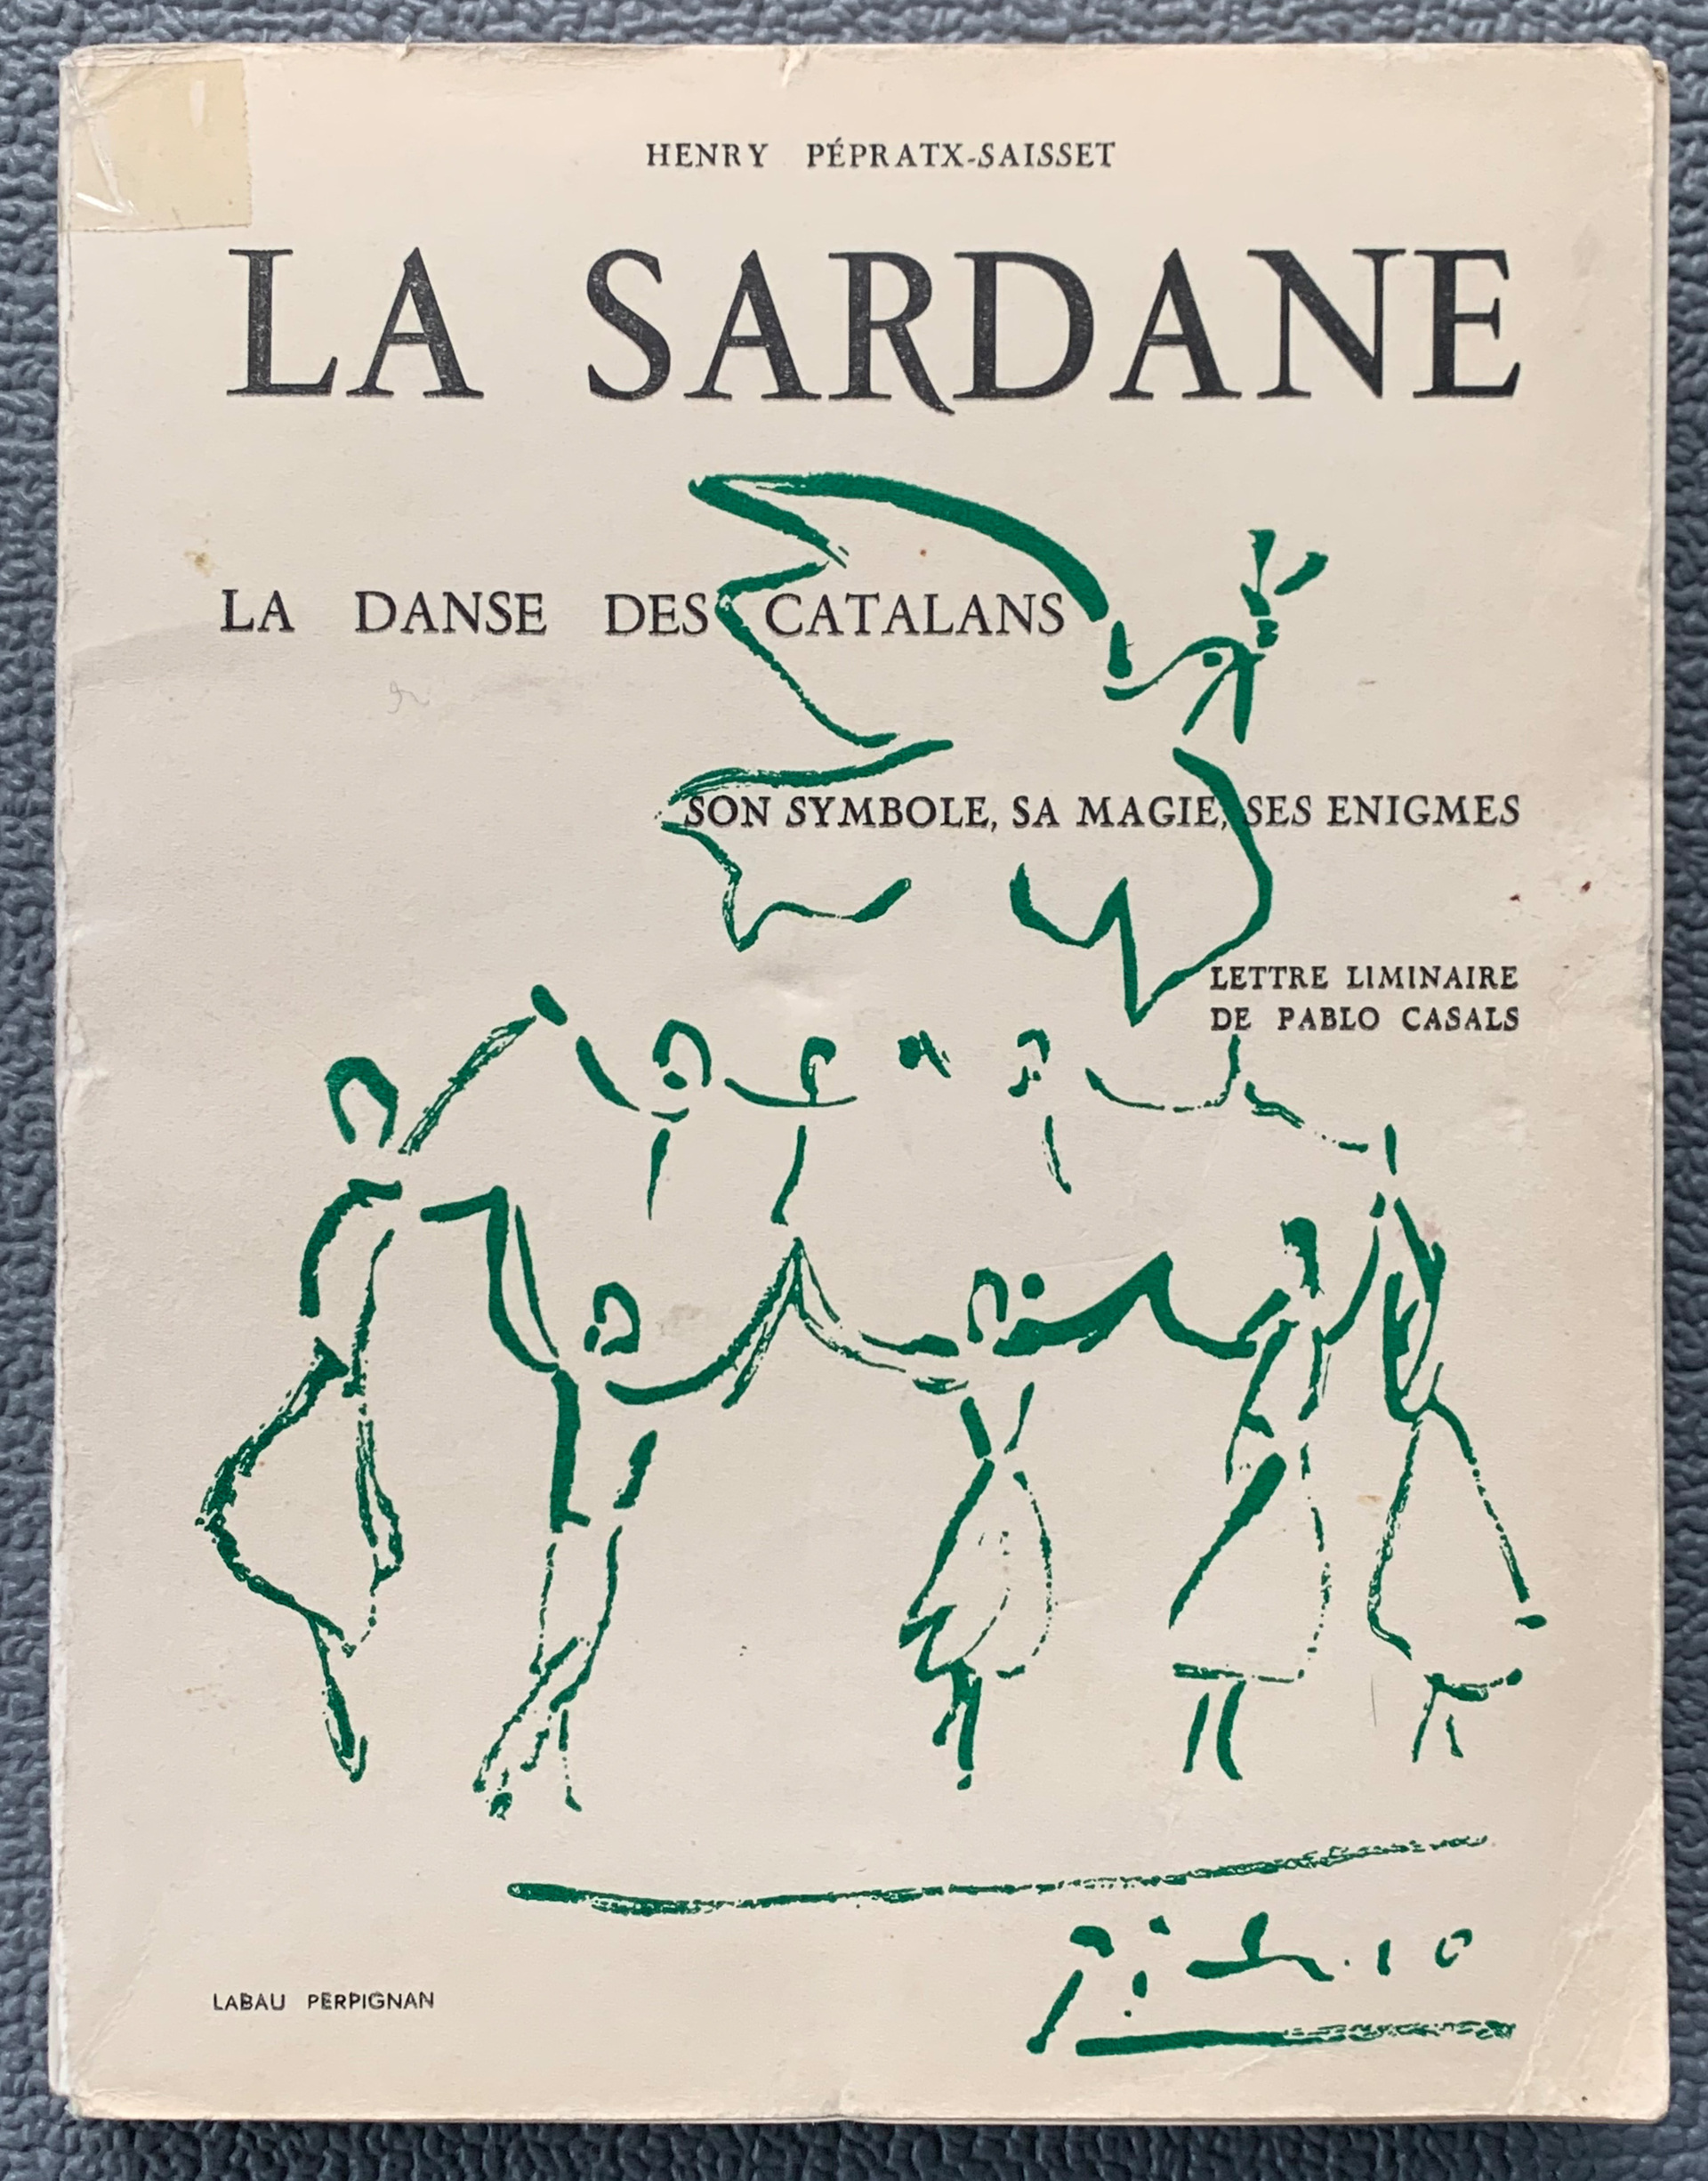 La Sardane - La Danse des Catalans, Henry Pépra...